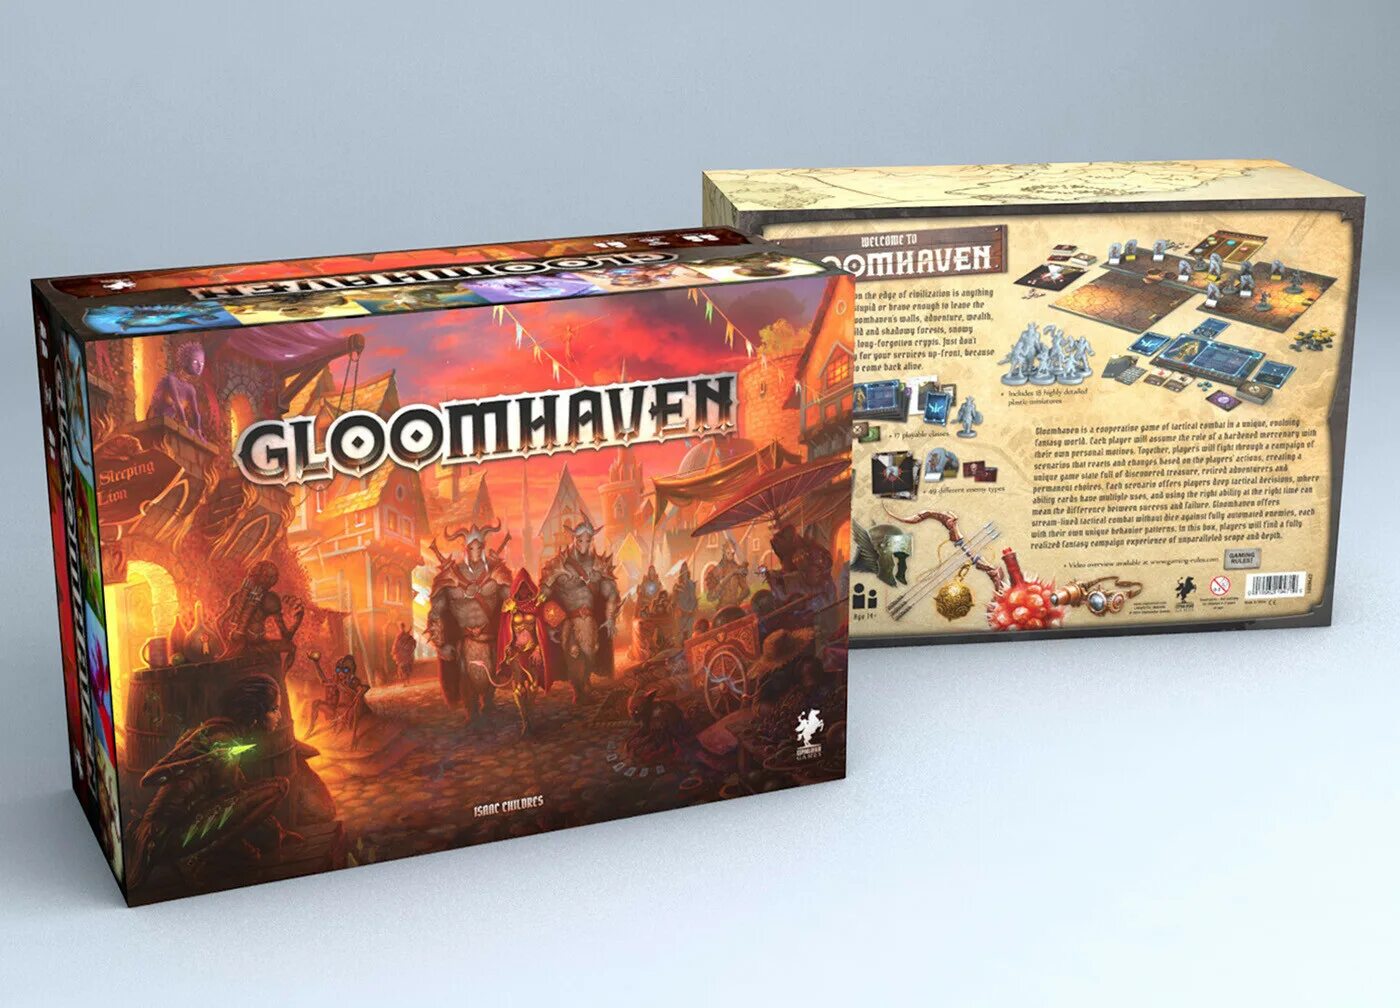 Vinhos настольная игра. Gloomhaven настольная игра. Настольная игра коробка. Настольная игра про логистику. Gloomhaven игра Cover.